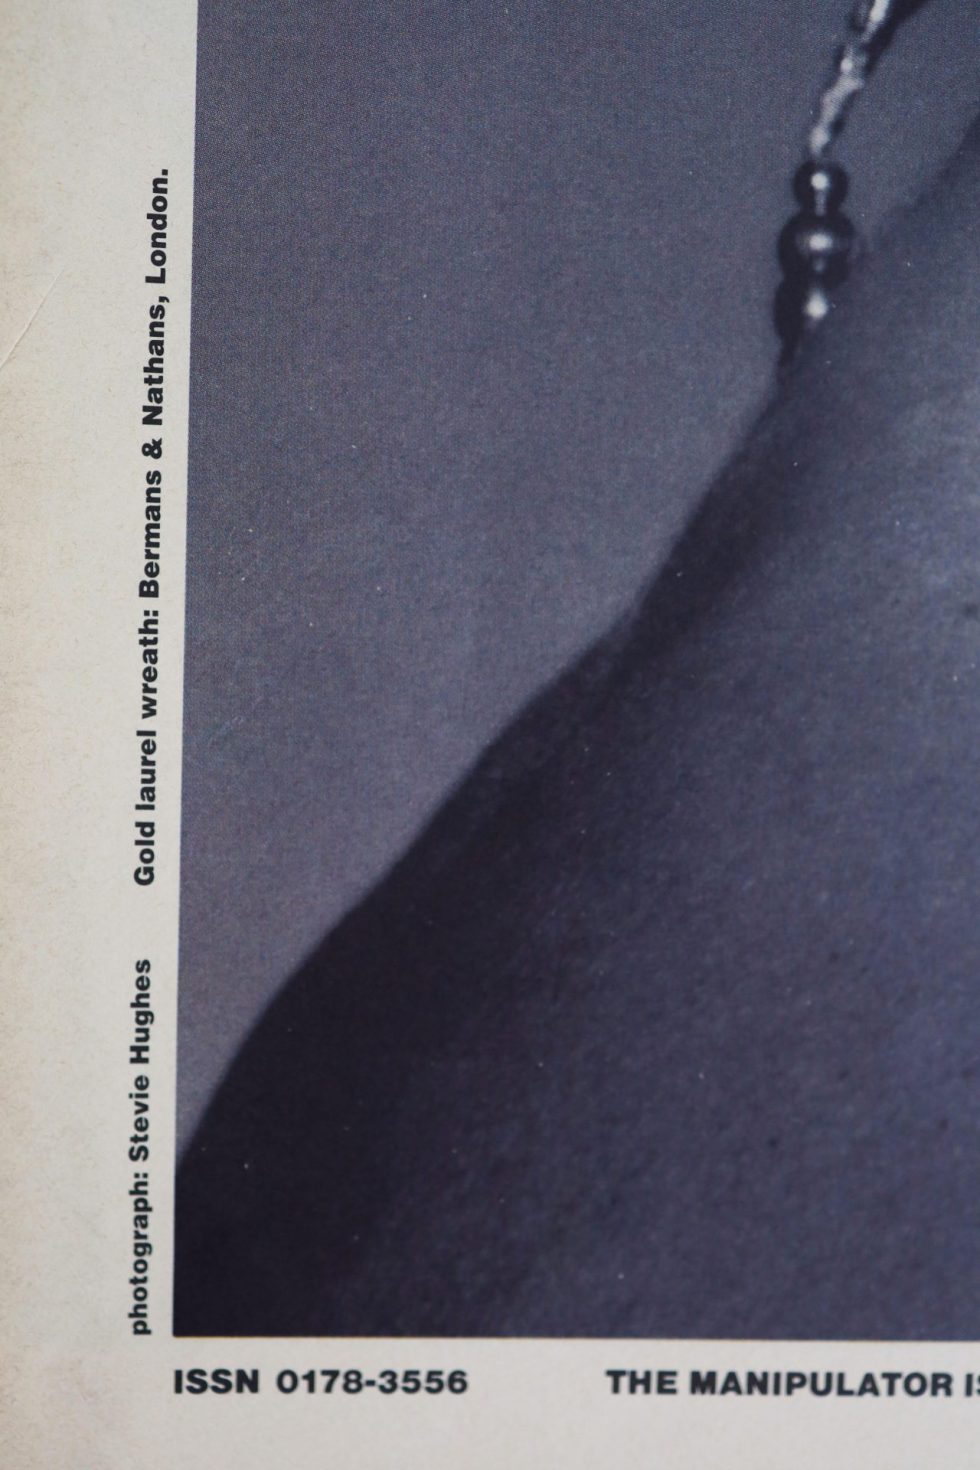 13165 Vintage Manipulator Magazine Issue 24 Year 1991 – Baer & Bosch